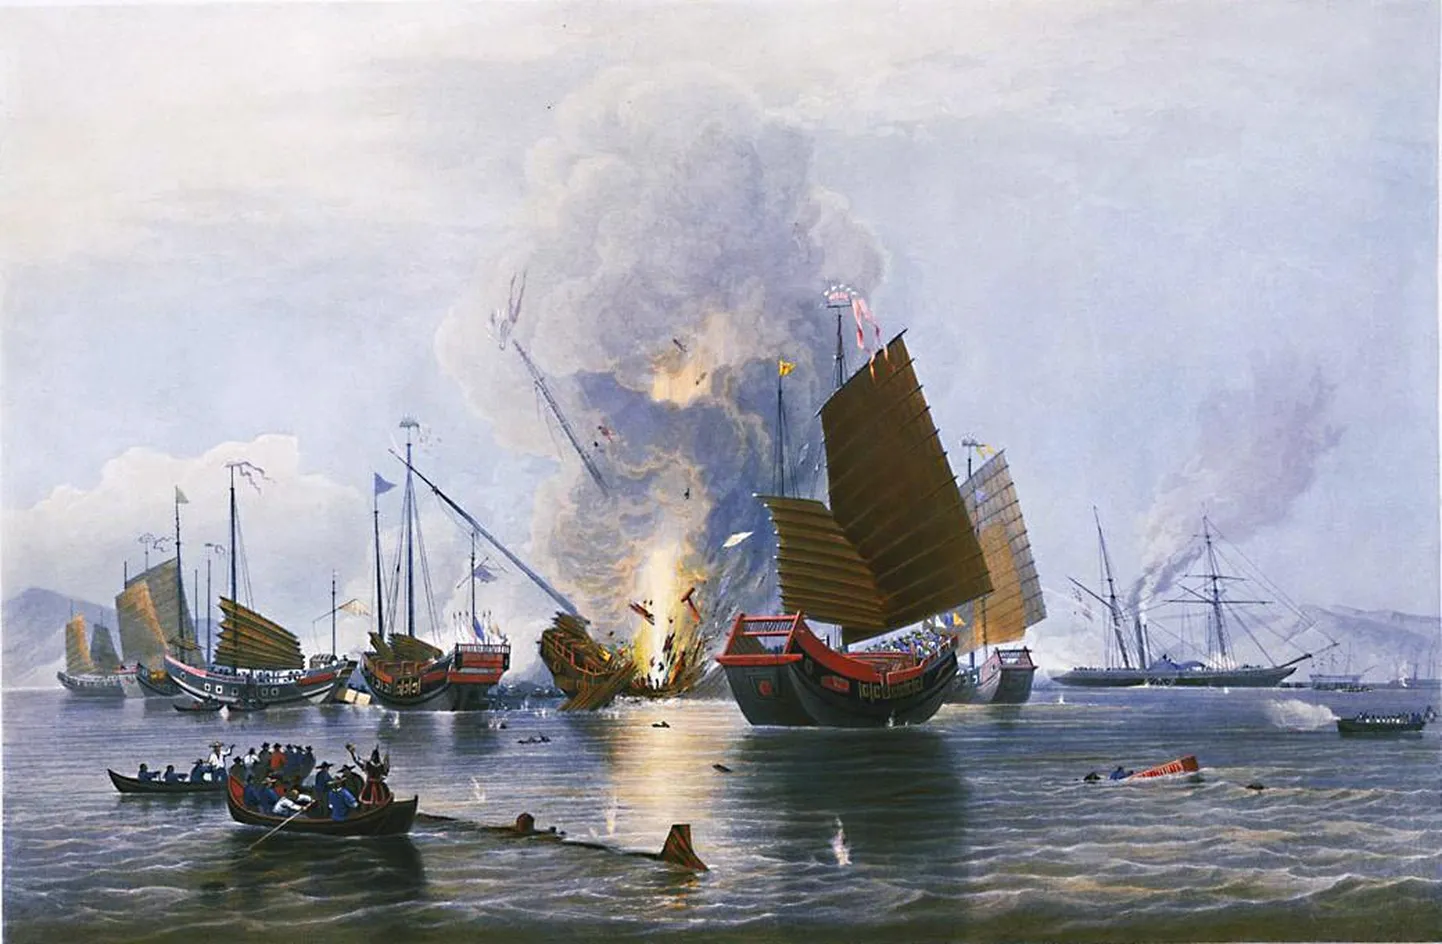 Hiina riik keelas 16. sajandil avamerelaevade ehitamise, mistõttu polnud riigist hiljem pealetungivatele eurooplastele vastast. Pildil Hiina džonkide hävitamine Briti Ida-India kompanii sõjalaeva Nemesis poolt Ansoni lahes 7. jaanuaril 1841. Edward Duncani maal 1925. aastast.